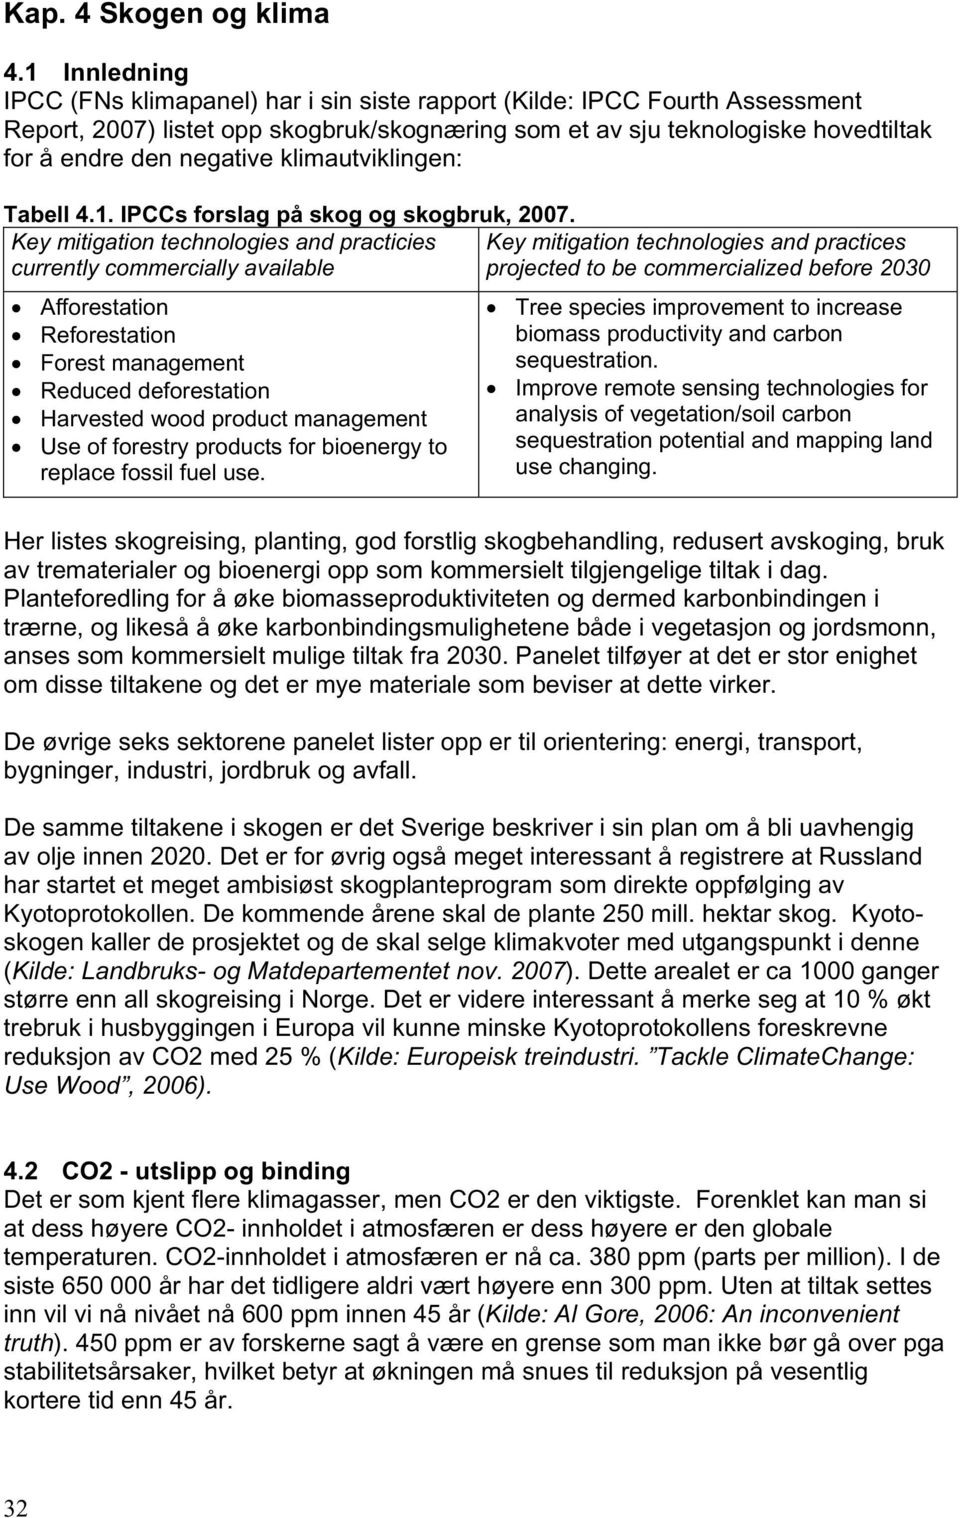 klimautviklingen: Tabell 4.1. IPCCs forslag på skog og skogbruk, 2007.